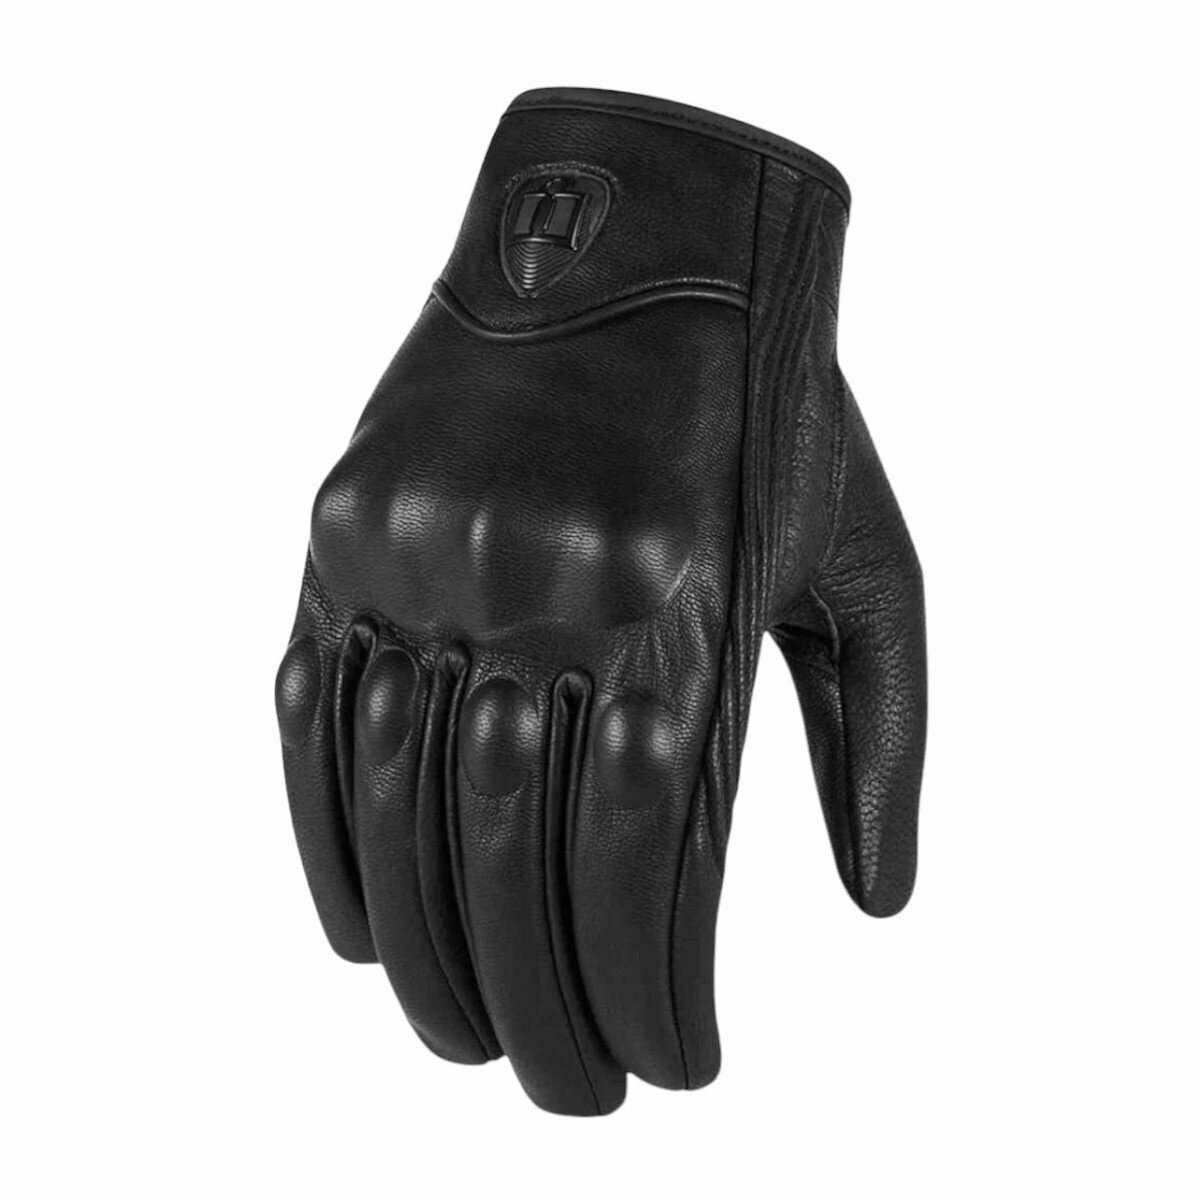 Мотоперчатки перчатки кожаные Y-12 для мотоциклиста на мотоцикл скутер мопед квадроцикл, черные, XL